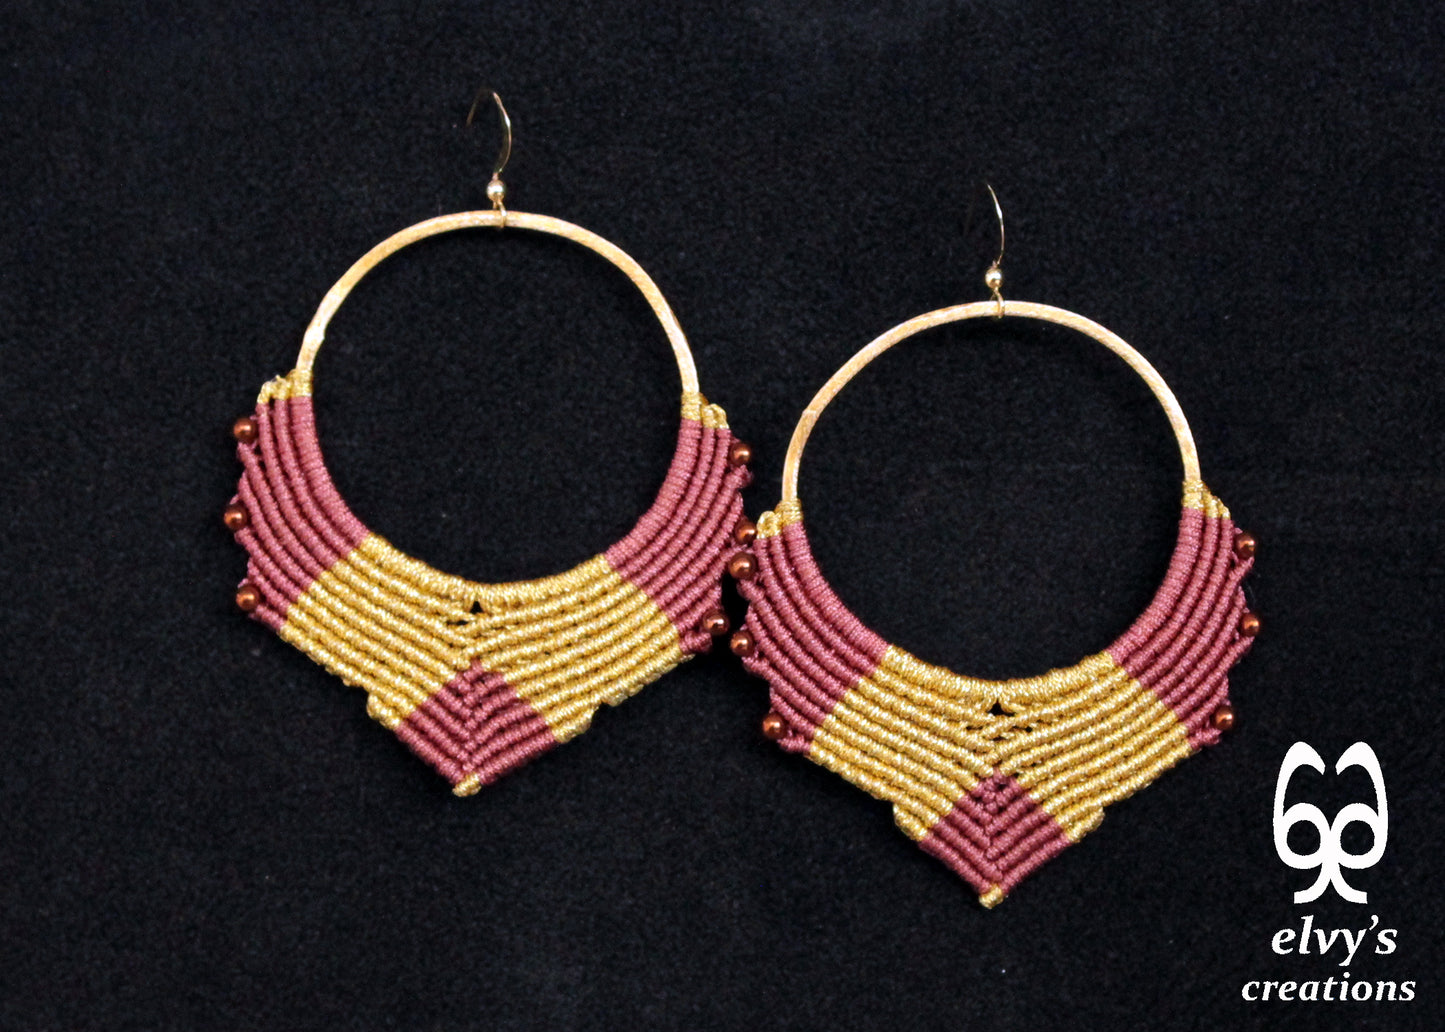 Handmade Gold Macrame Earrings, Dangle Hematite Gemstone Beads Hoop Earrings, Birthday Gift for Women